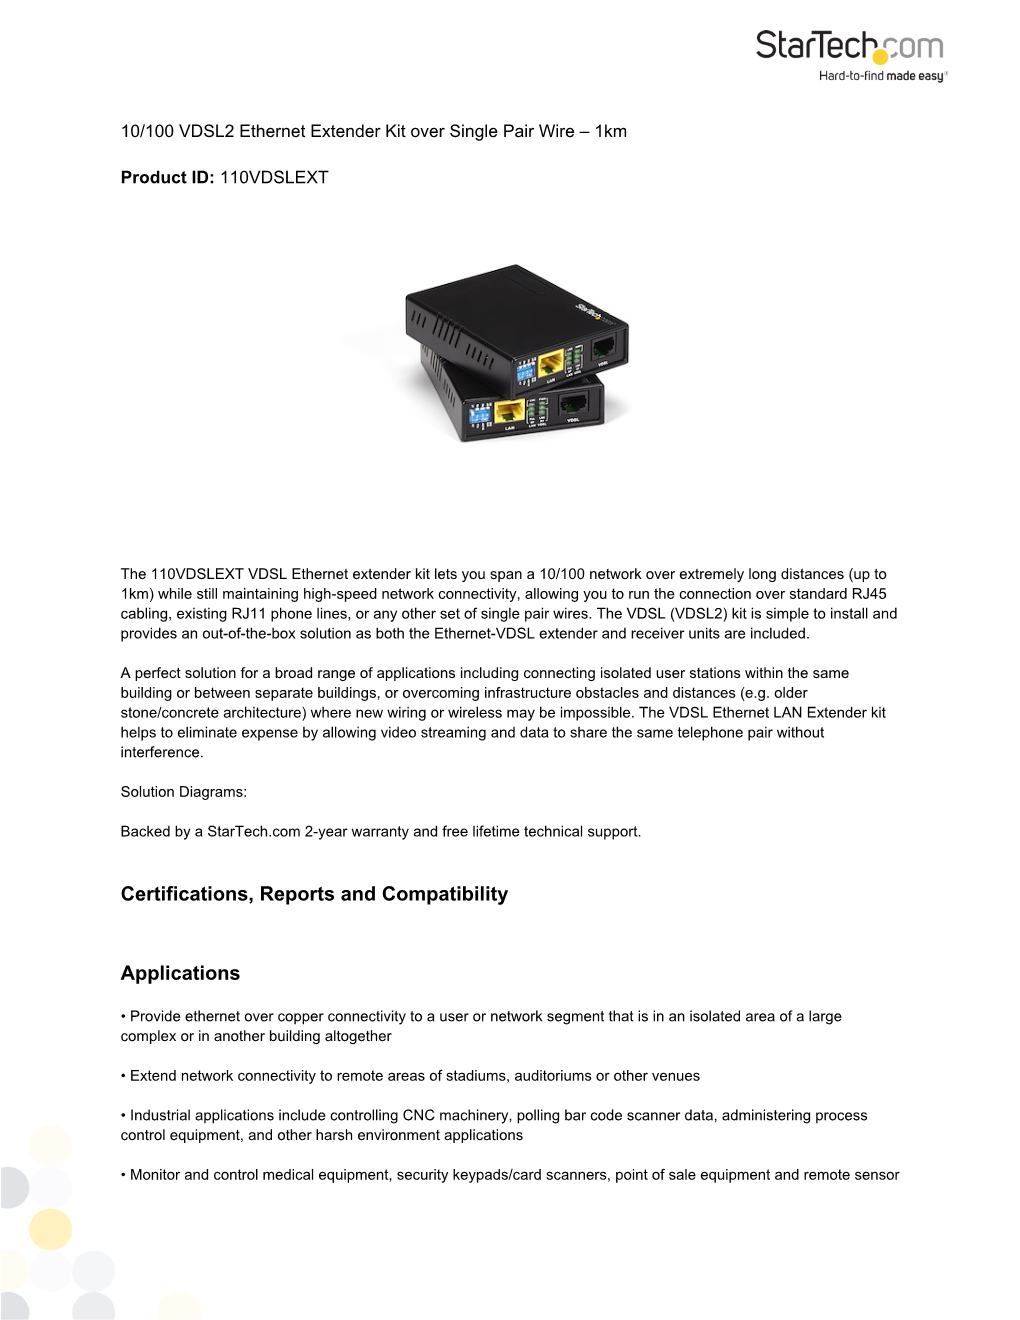 VDSL2 Ethernet Extender Kit Over UTP | Ethernet Extenders